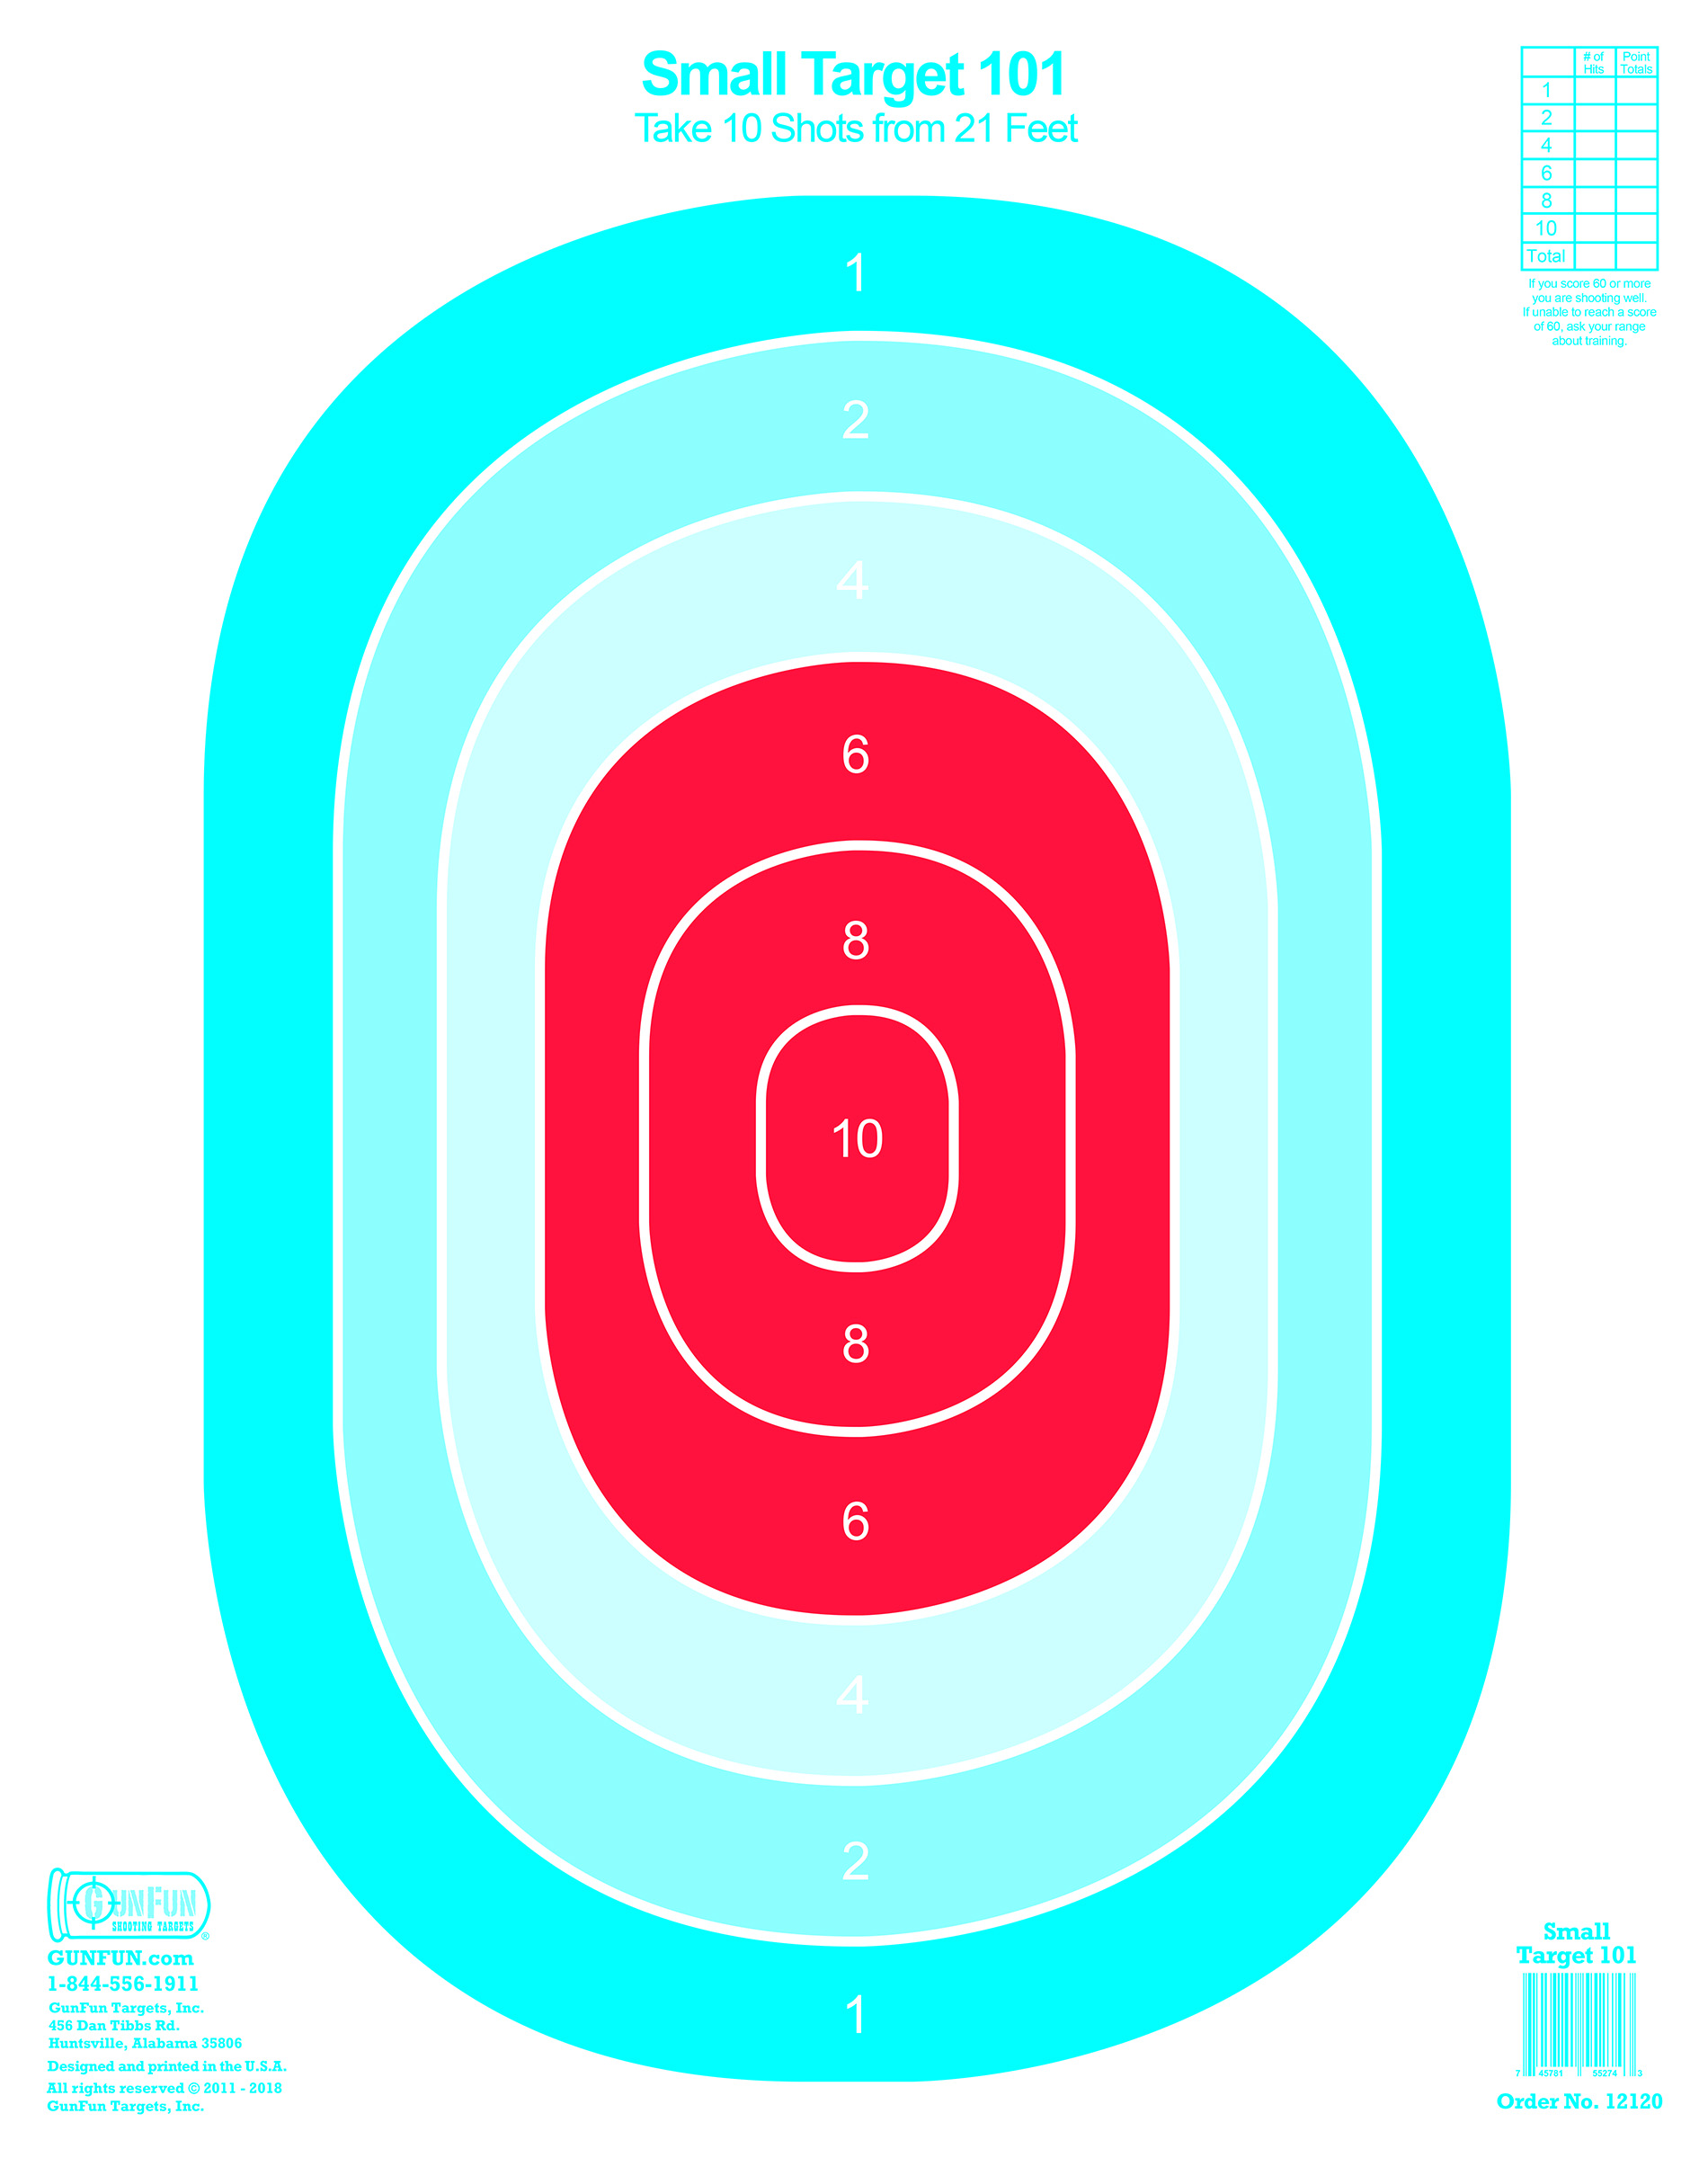 Small Target 101 (12120) | GunFun Shooting Targets